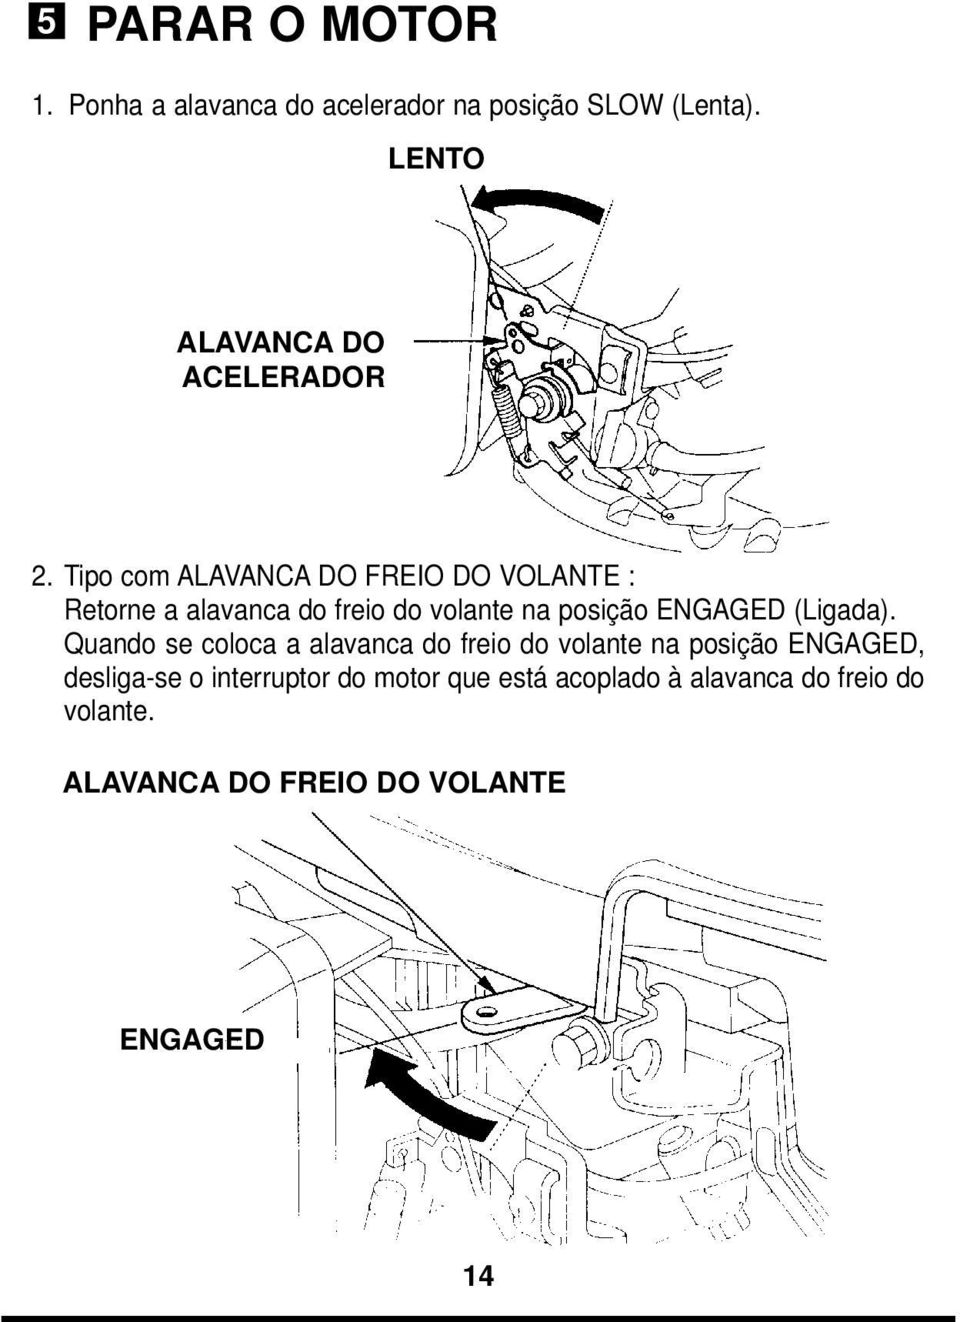 Tipo com ALAVANCA DO FREIO DO VOLANTE : Retorne a alavanca do freio do volante na posição ENGAGED